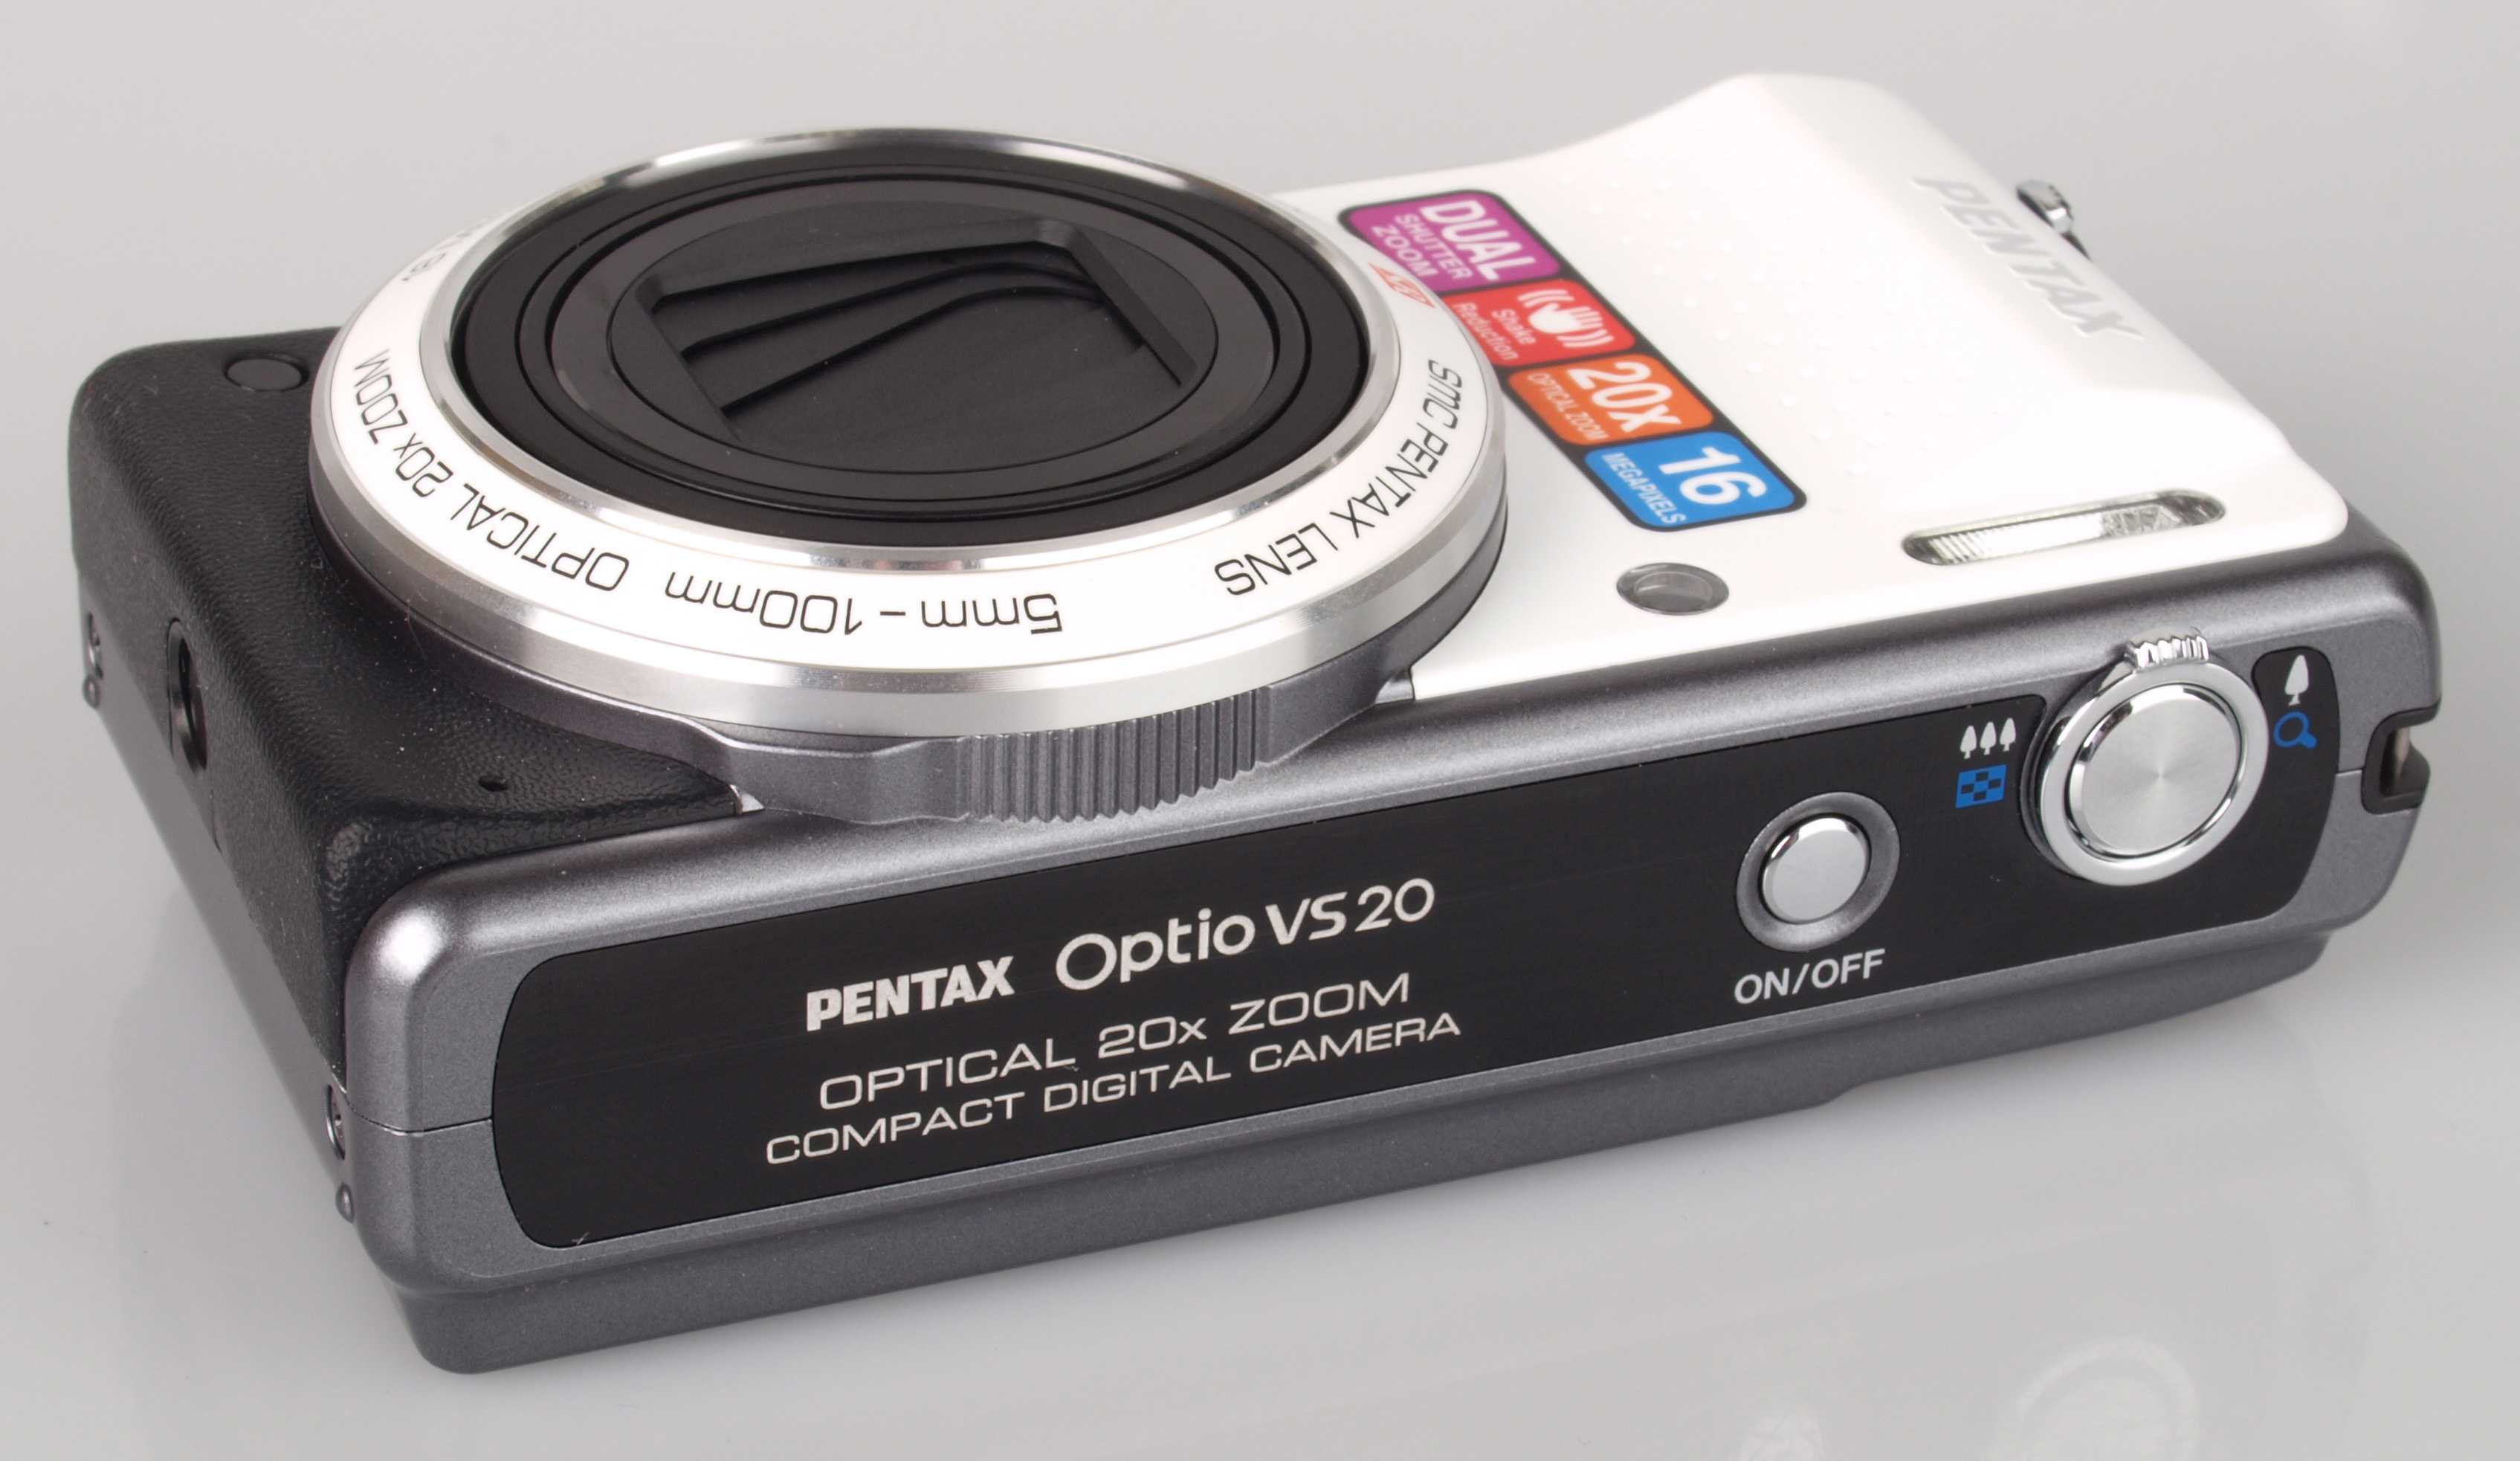 Фотоаппарат пентакс optio w20 купить недорого в москве, цена 2021, отзывы г. москва